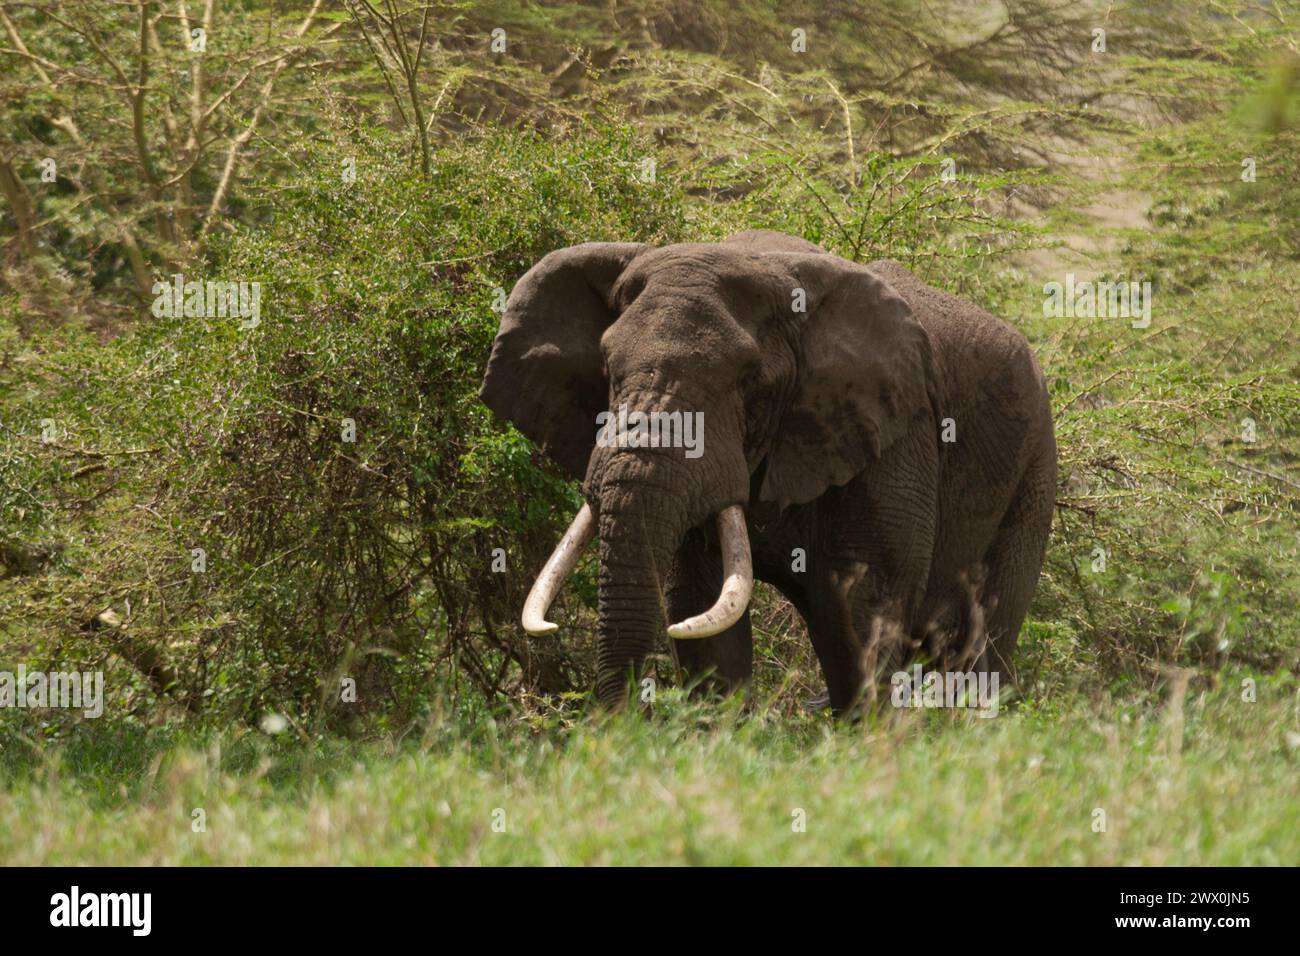 African elephants Stock Photo